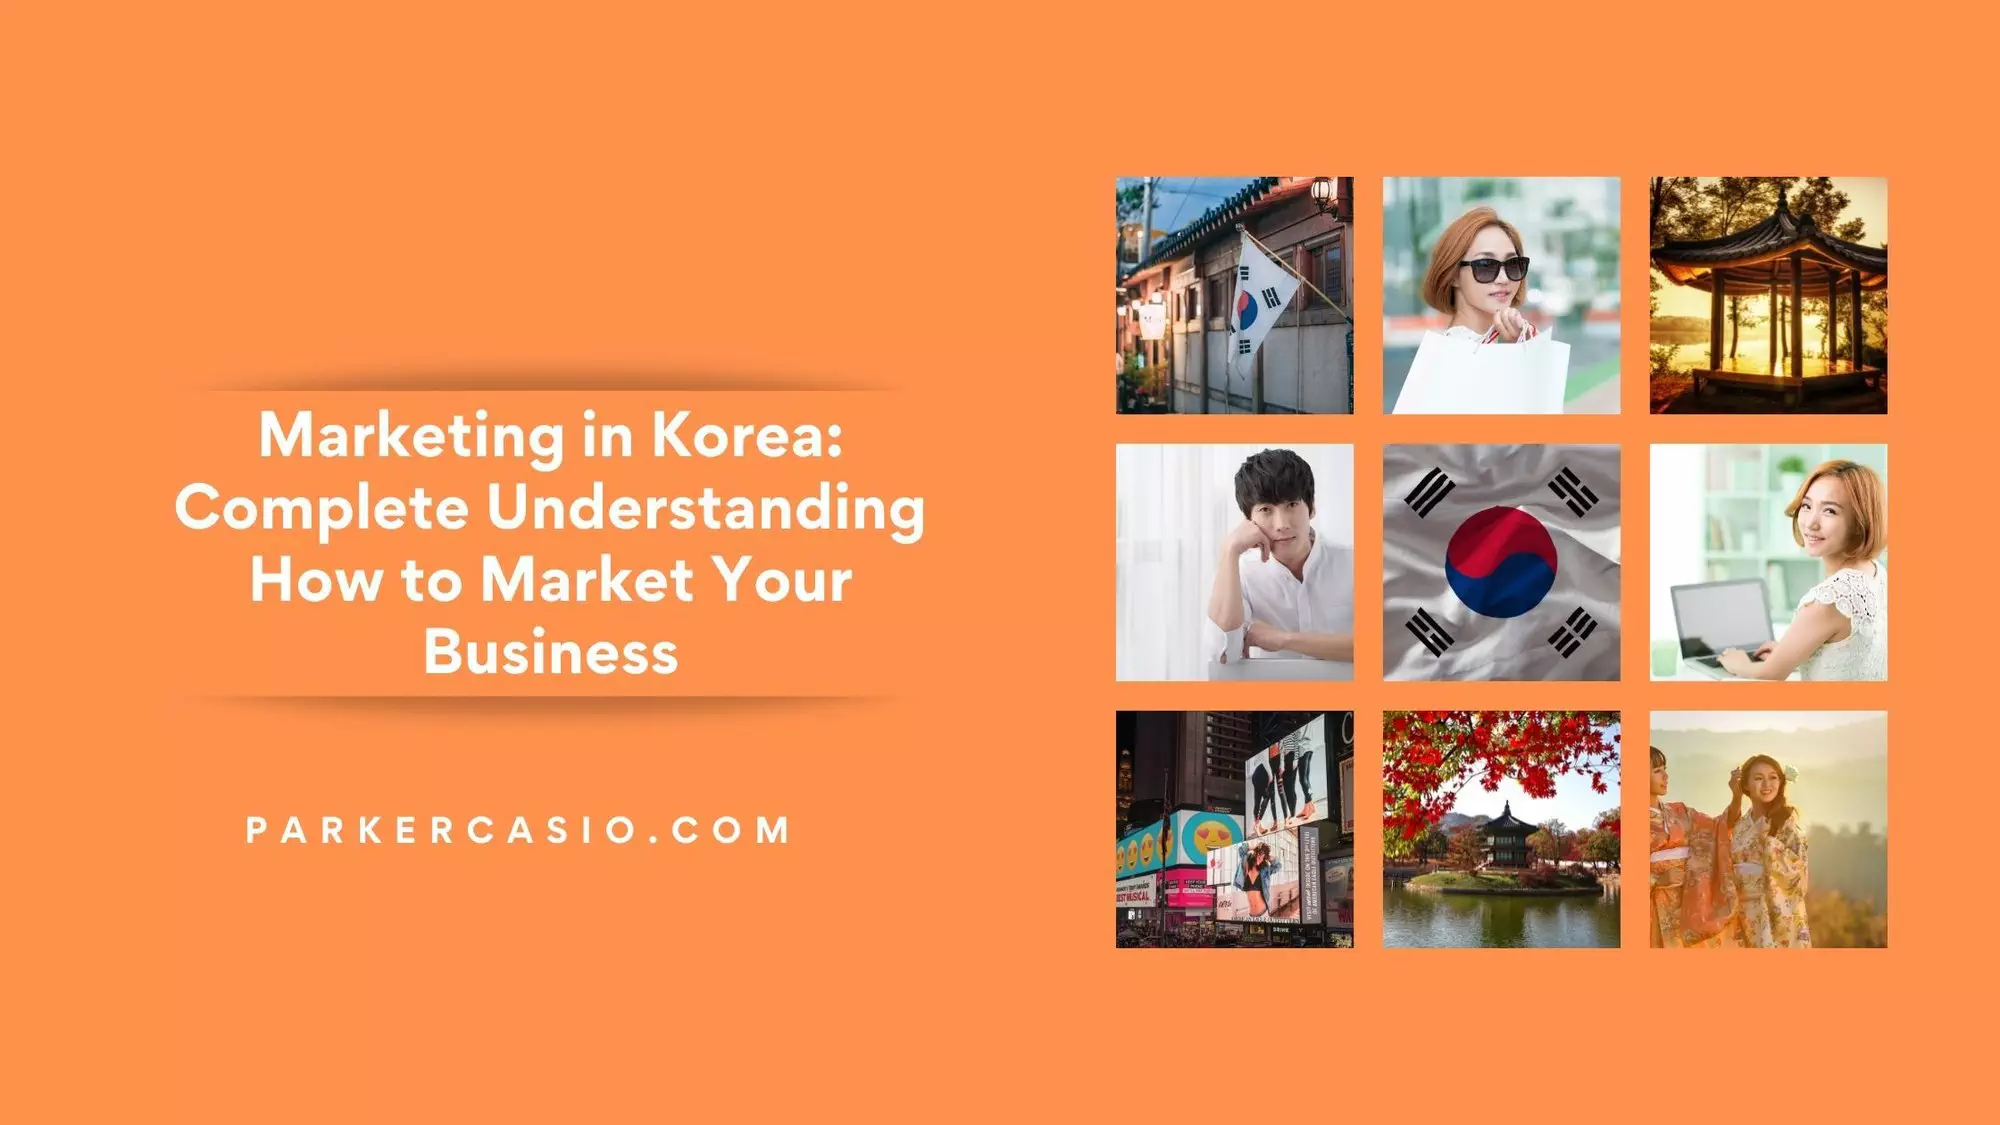 Marketing in Korea: Complete Understanding How to Market Your Business